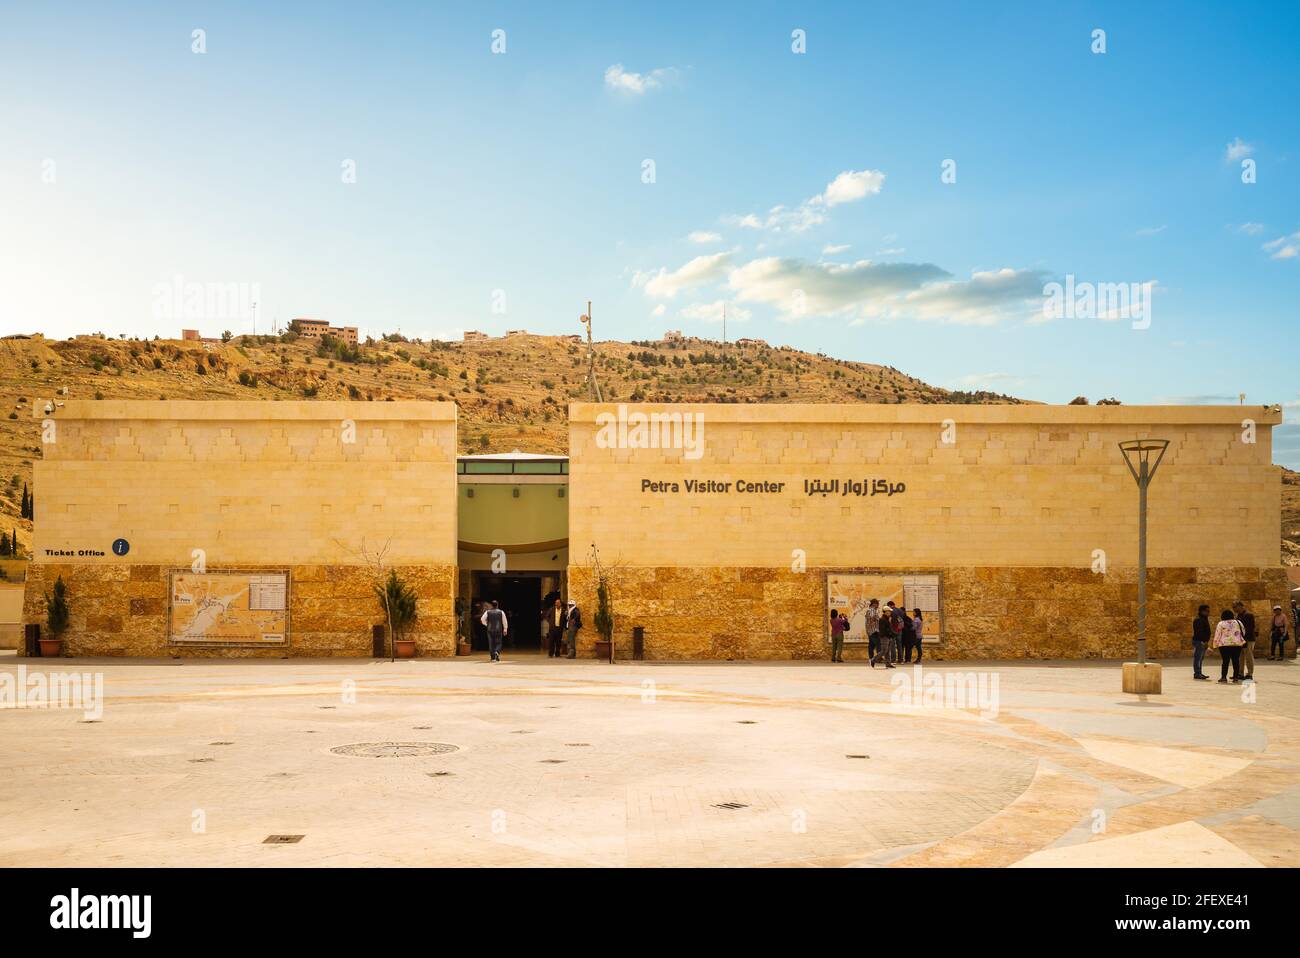 23 marzo 2019: Centro visitatori Petra situato ai margini della città di Wadi Musa, giordania. E 'aperto tutti i giorni e vende biglietti, organizza per guide, pr Foto Stock